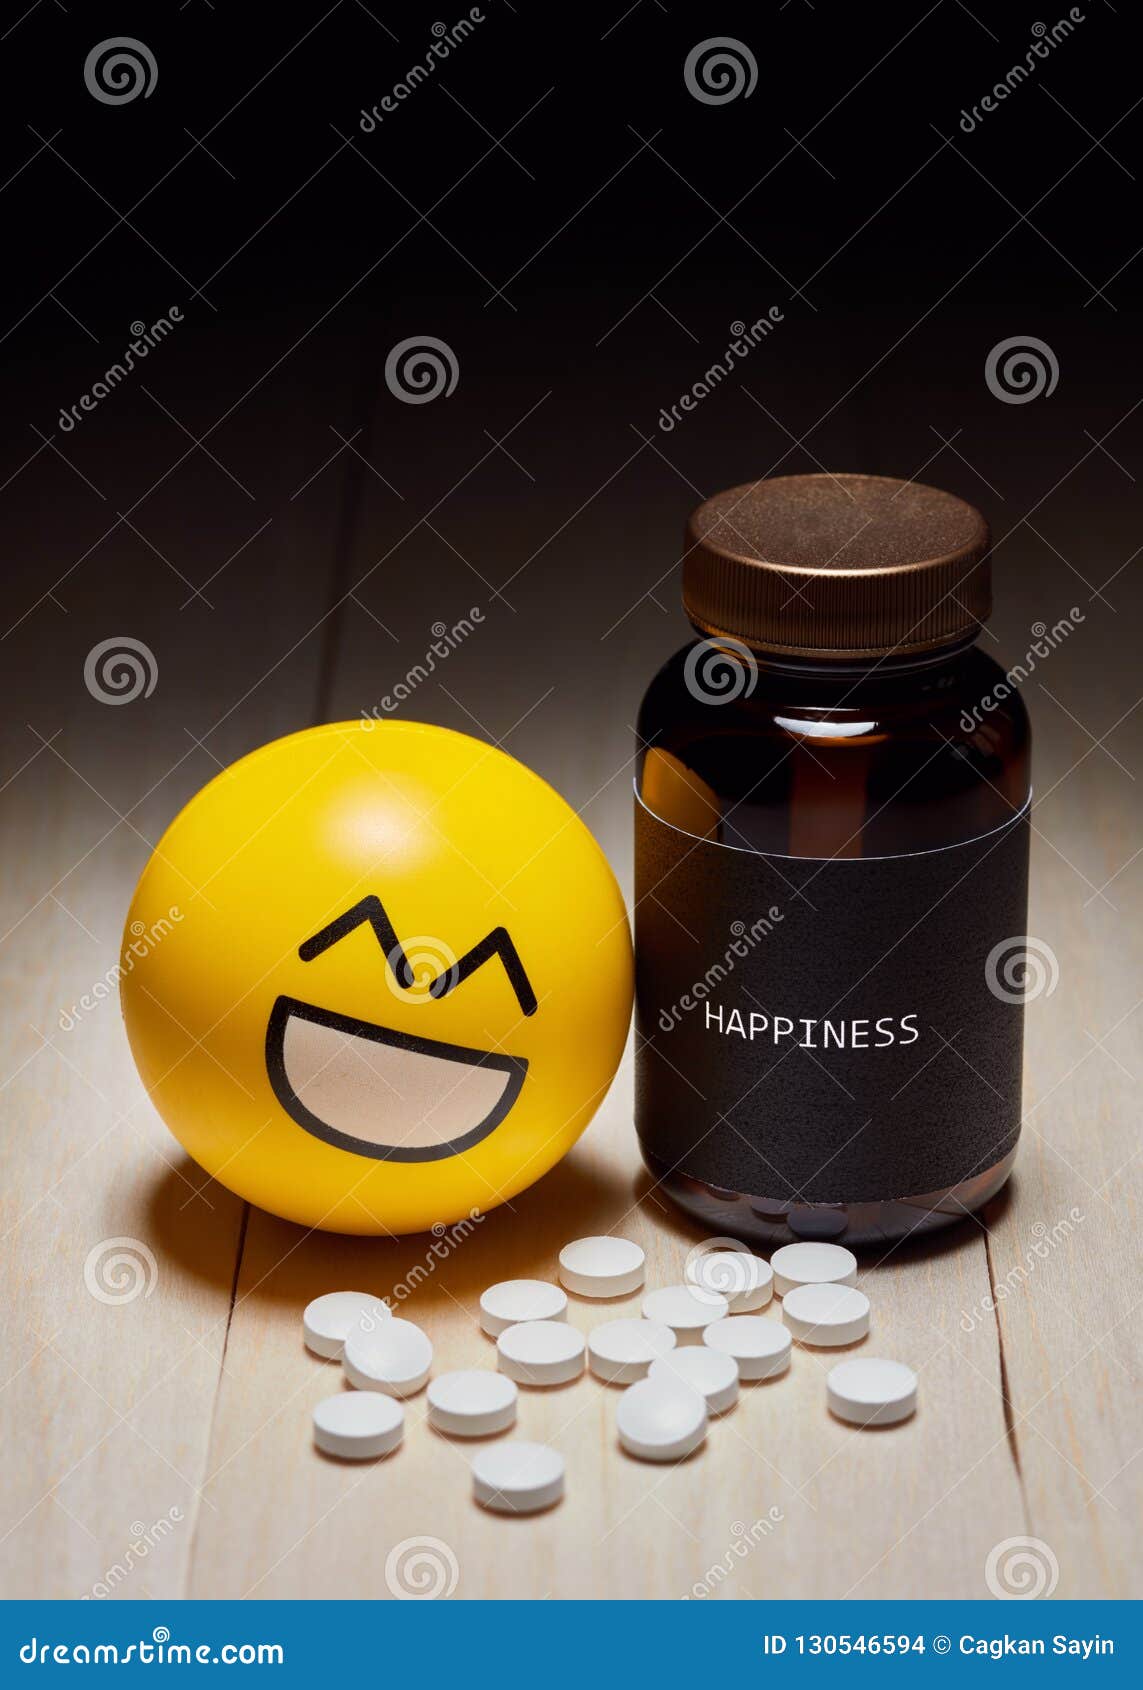 Наркотик счастья купить в москве карловарская соль